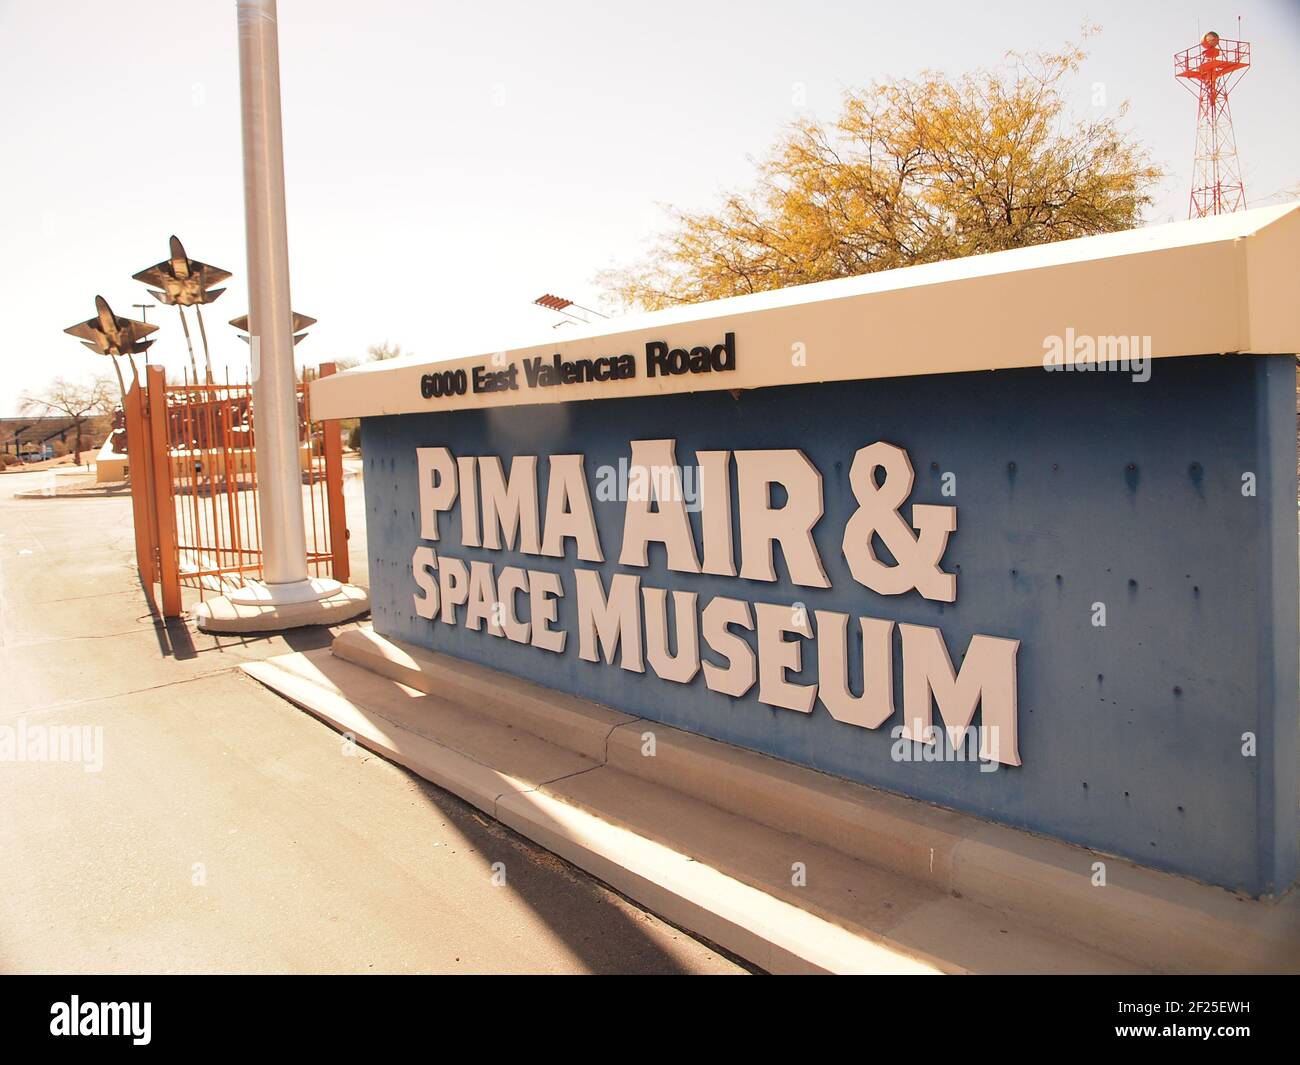 Entrée au musée de l'air et de l'espace de Pima à Tucson, Arizona. L'installation a des centaines d'avions en exposition à l'extérieur comme à l'intérieur. Banque D'Images